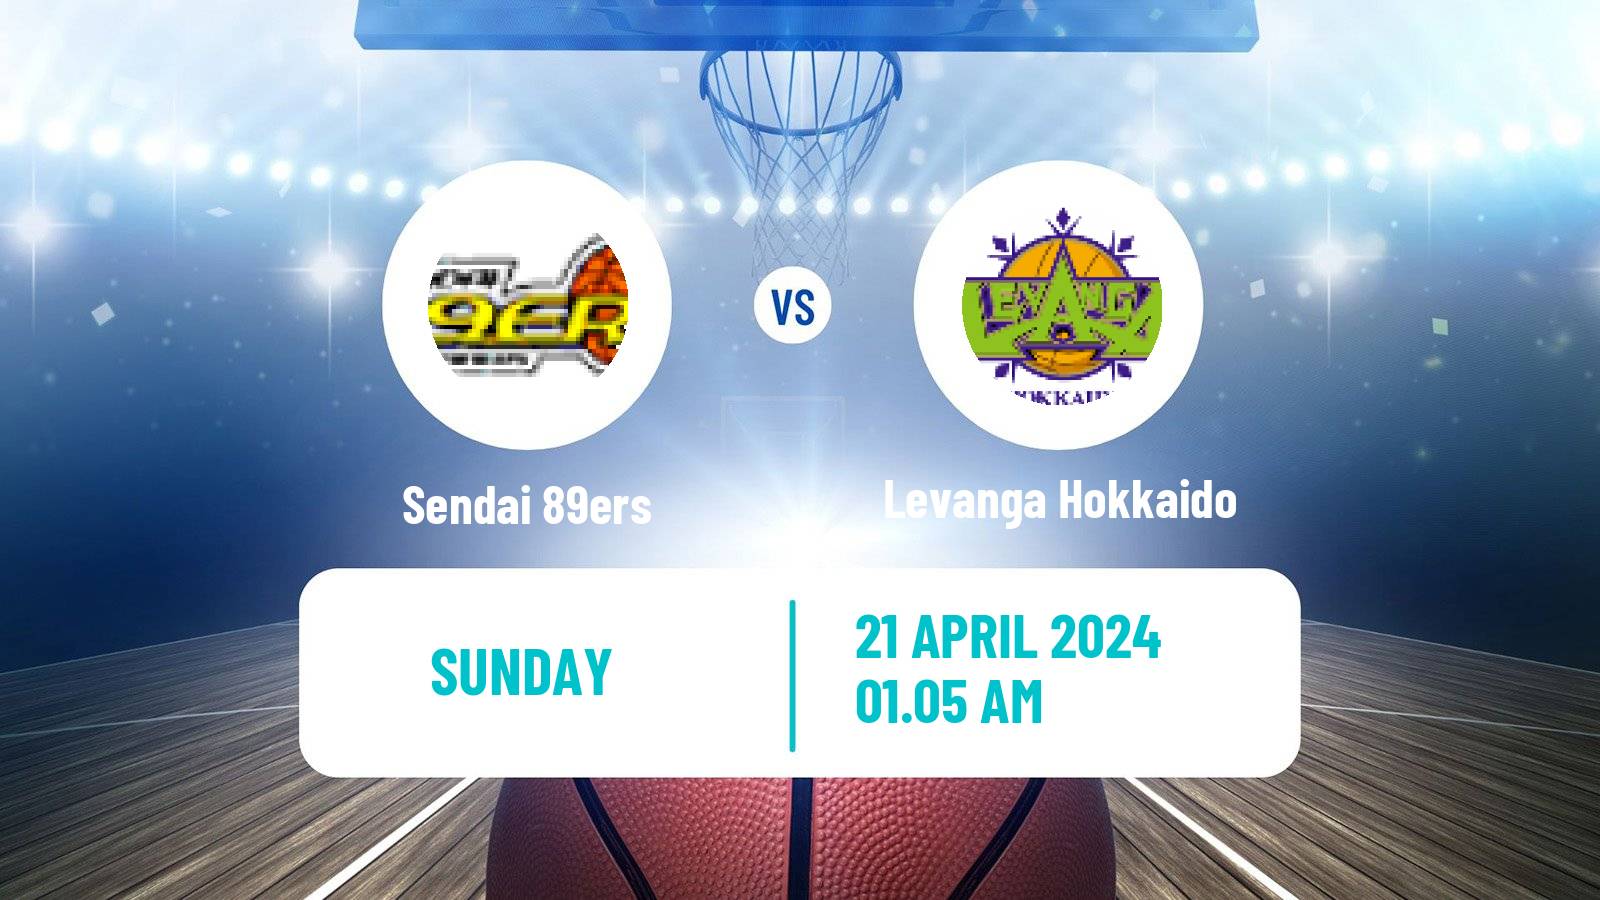 Basketball BJ League Sendai 89ers - Levanga Hokkaido